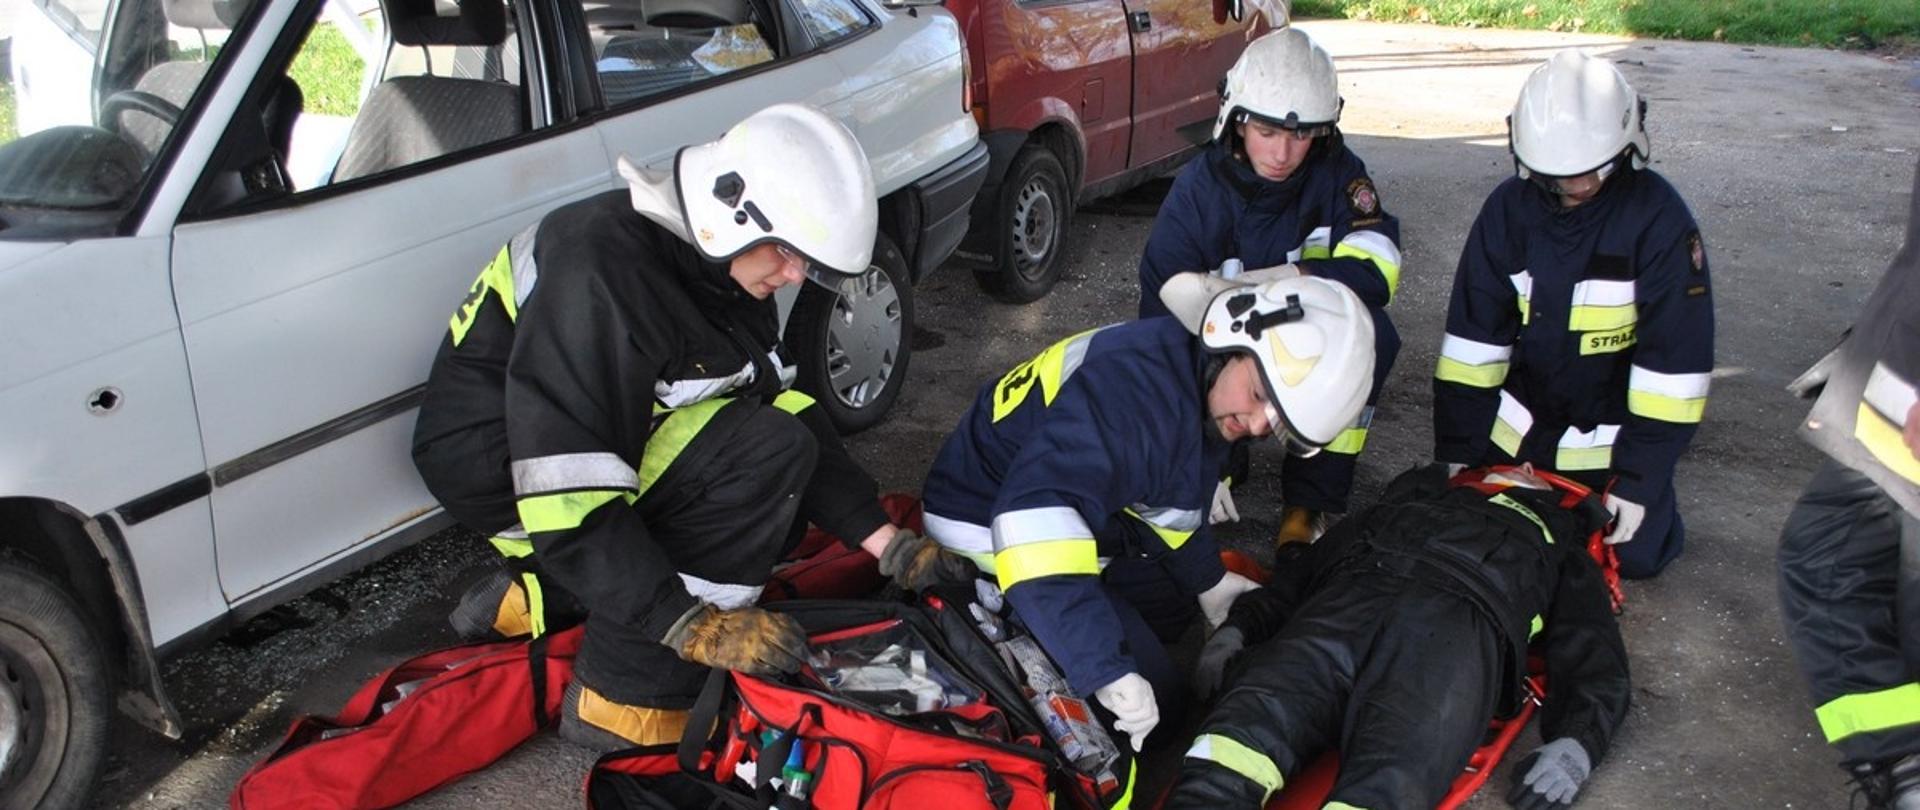 Na zdjęciu widać czterech ratowników szkolących się w udzielaniu pomocy poszkodowanemu. Osoba poszkodowana znajduję się na noszach typu deska, obok poszkodowanego znajduje się torba PSP-R1.